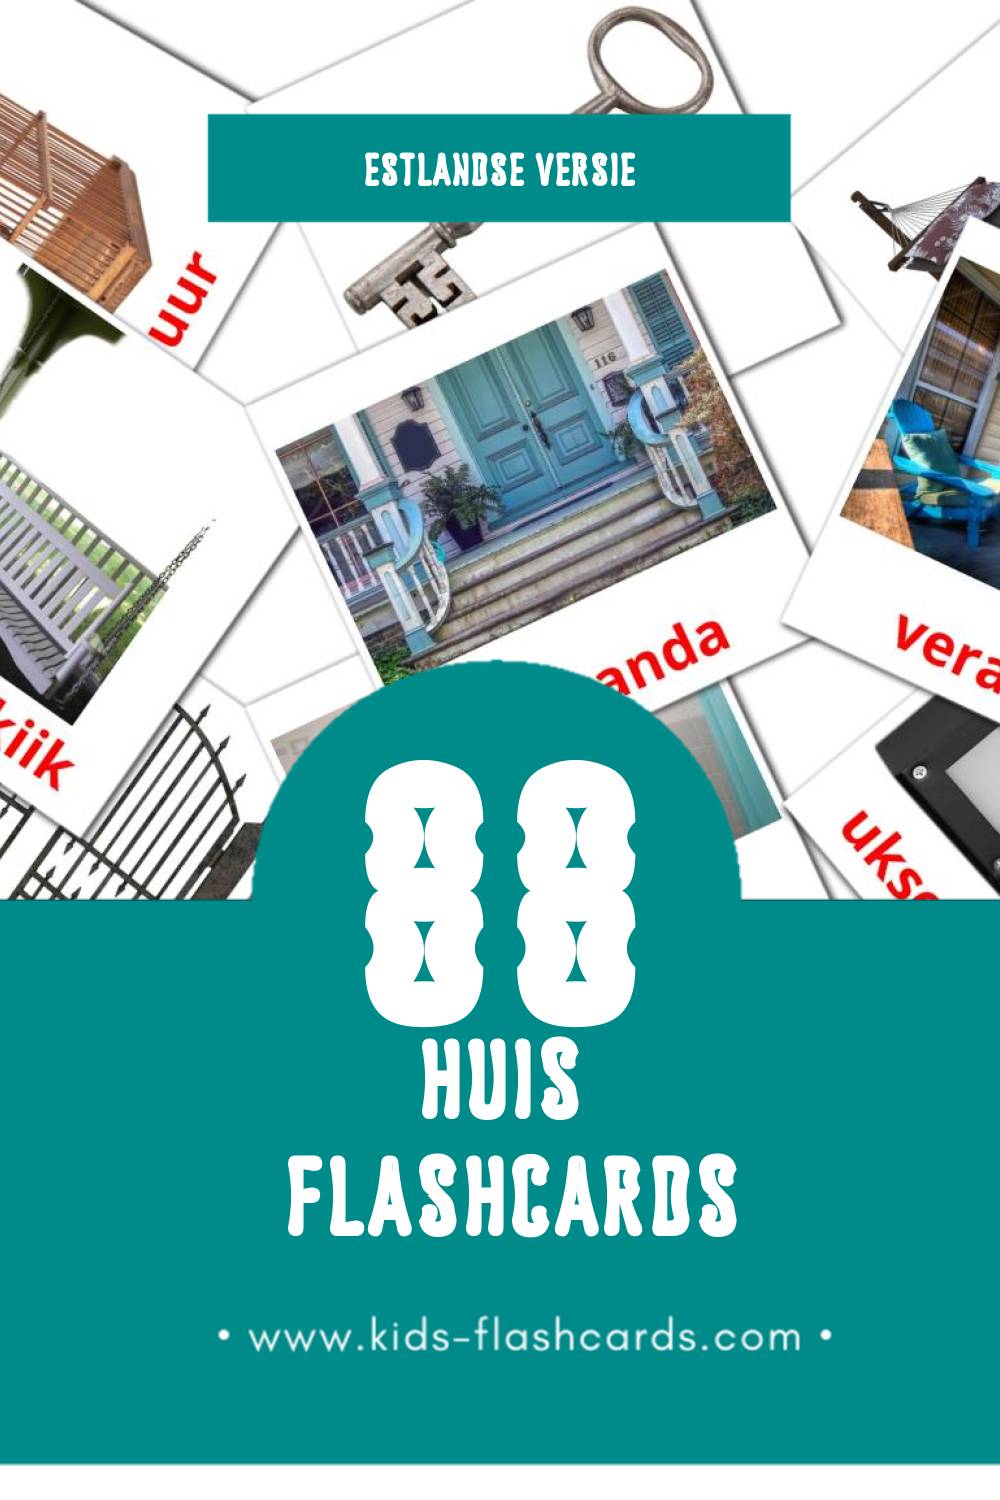 Visuele Maja Flashcards voor Kleuters (88 kaarten in het Estlands)